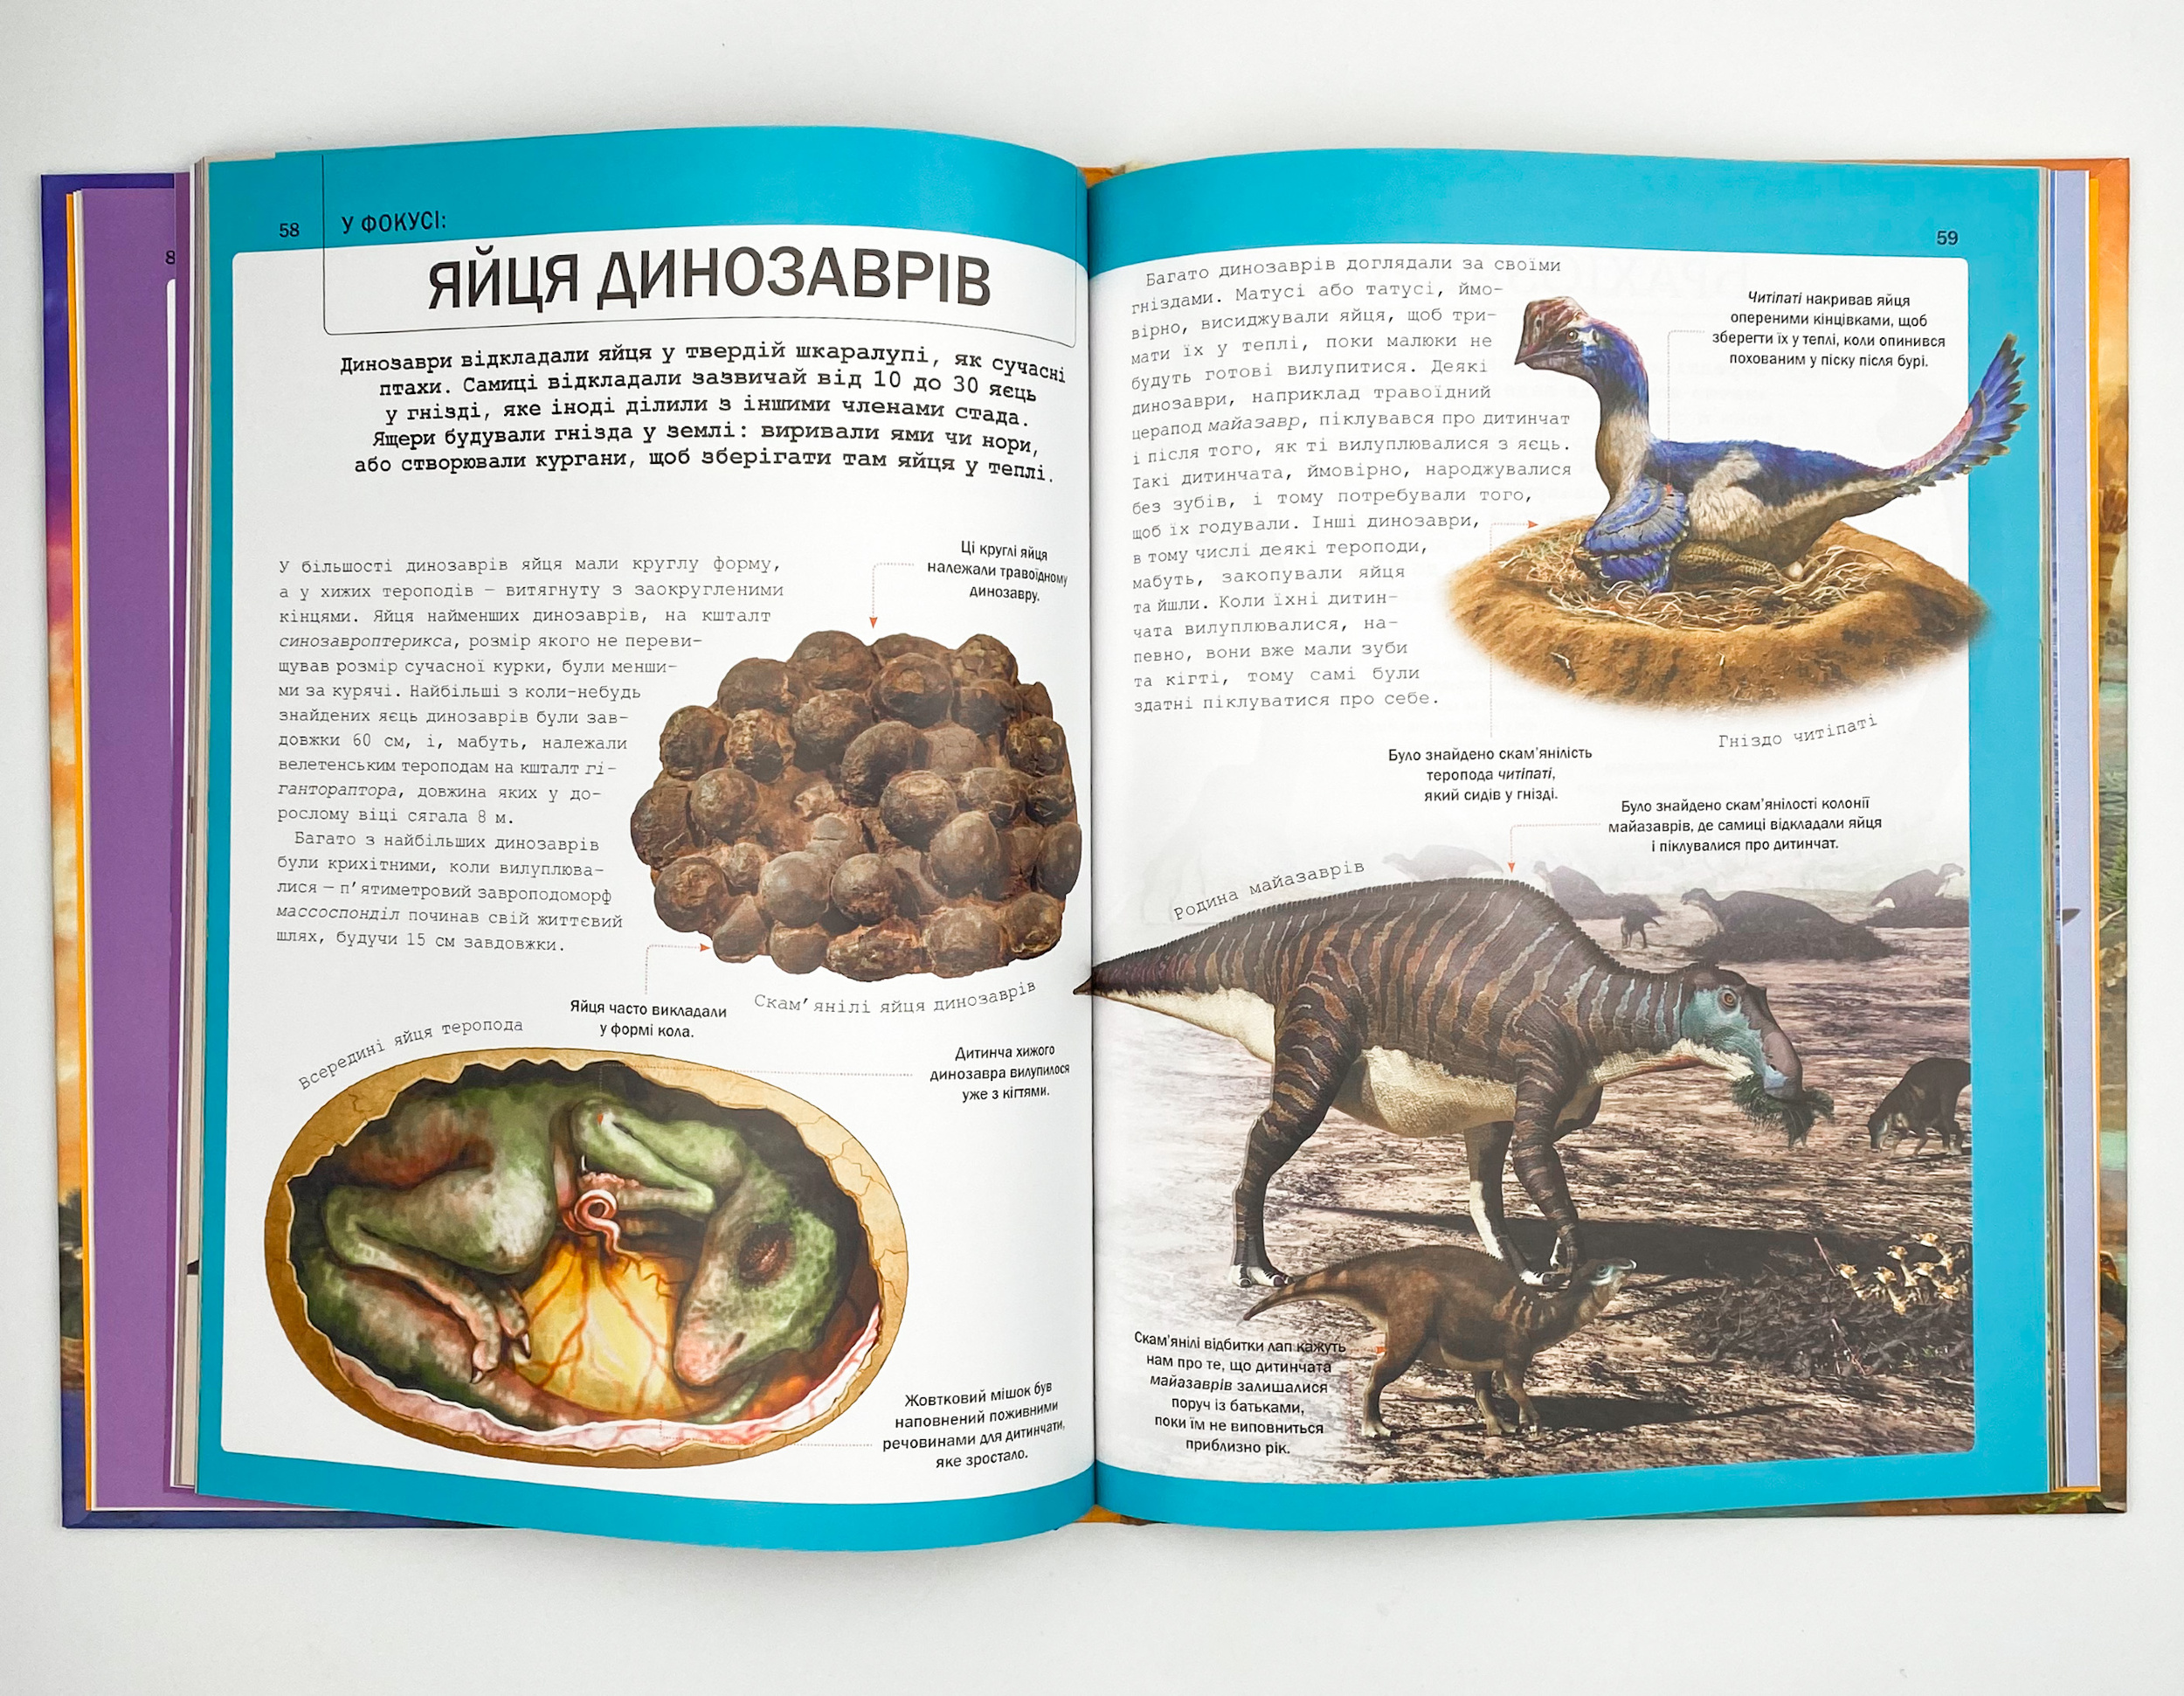 Велика книга динозаврів. Автор — Мартін Клаудія. 